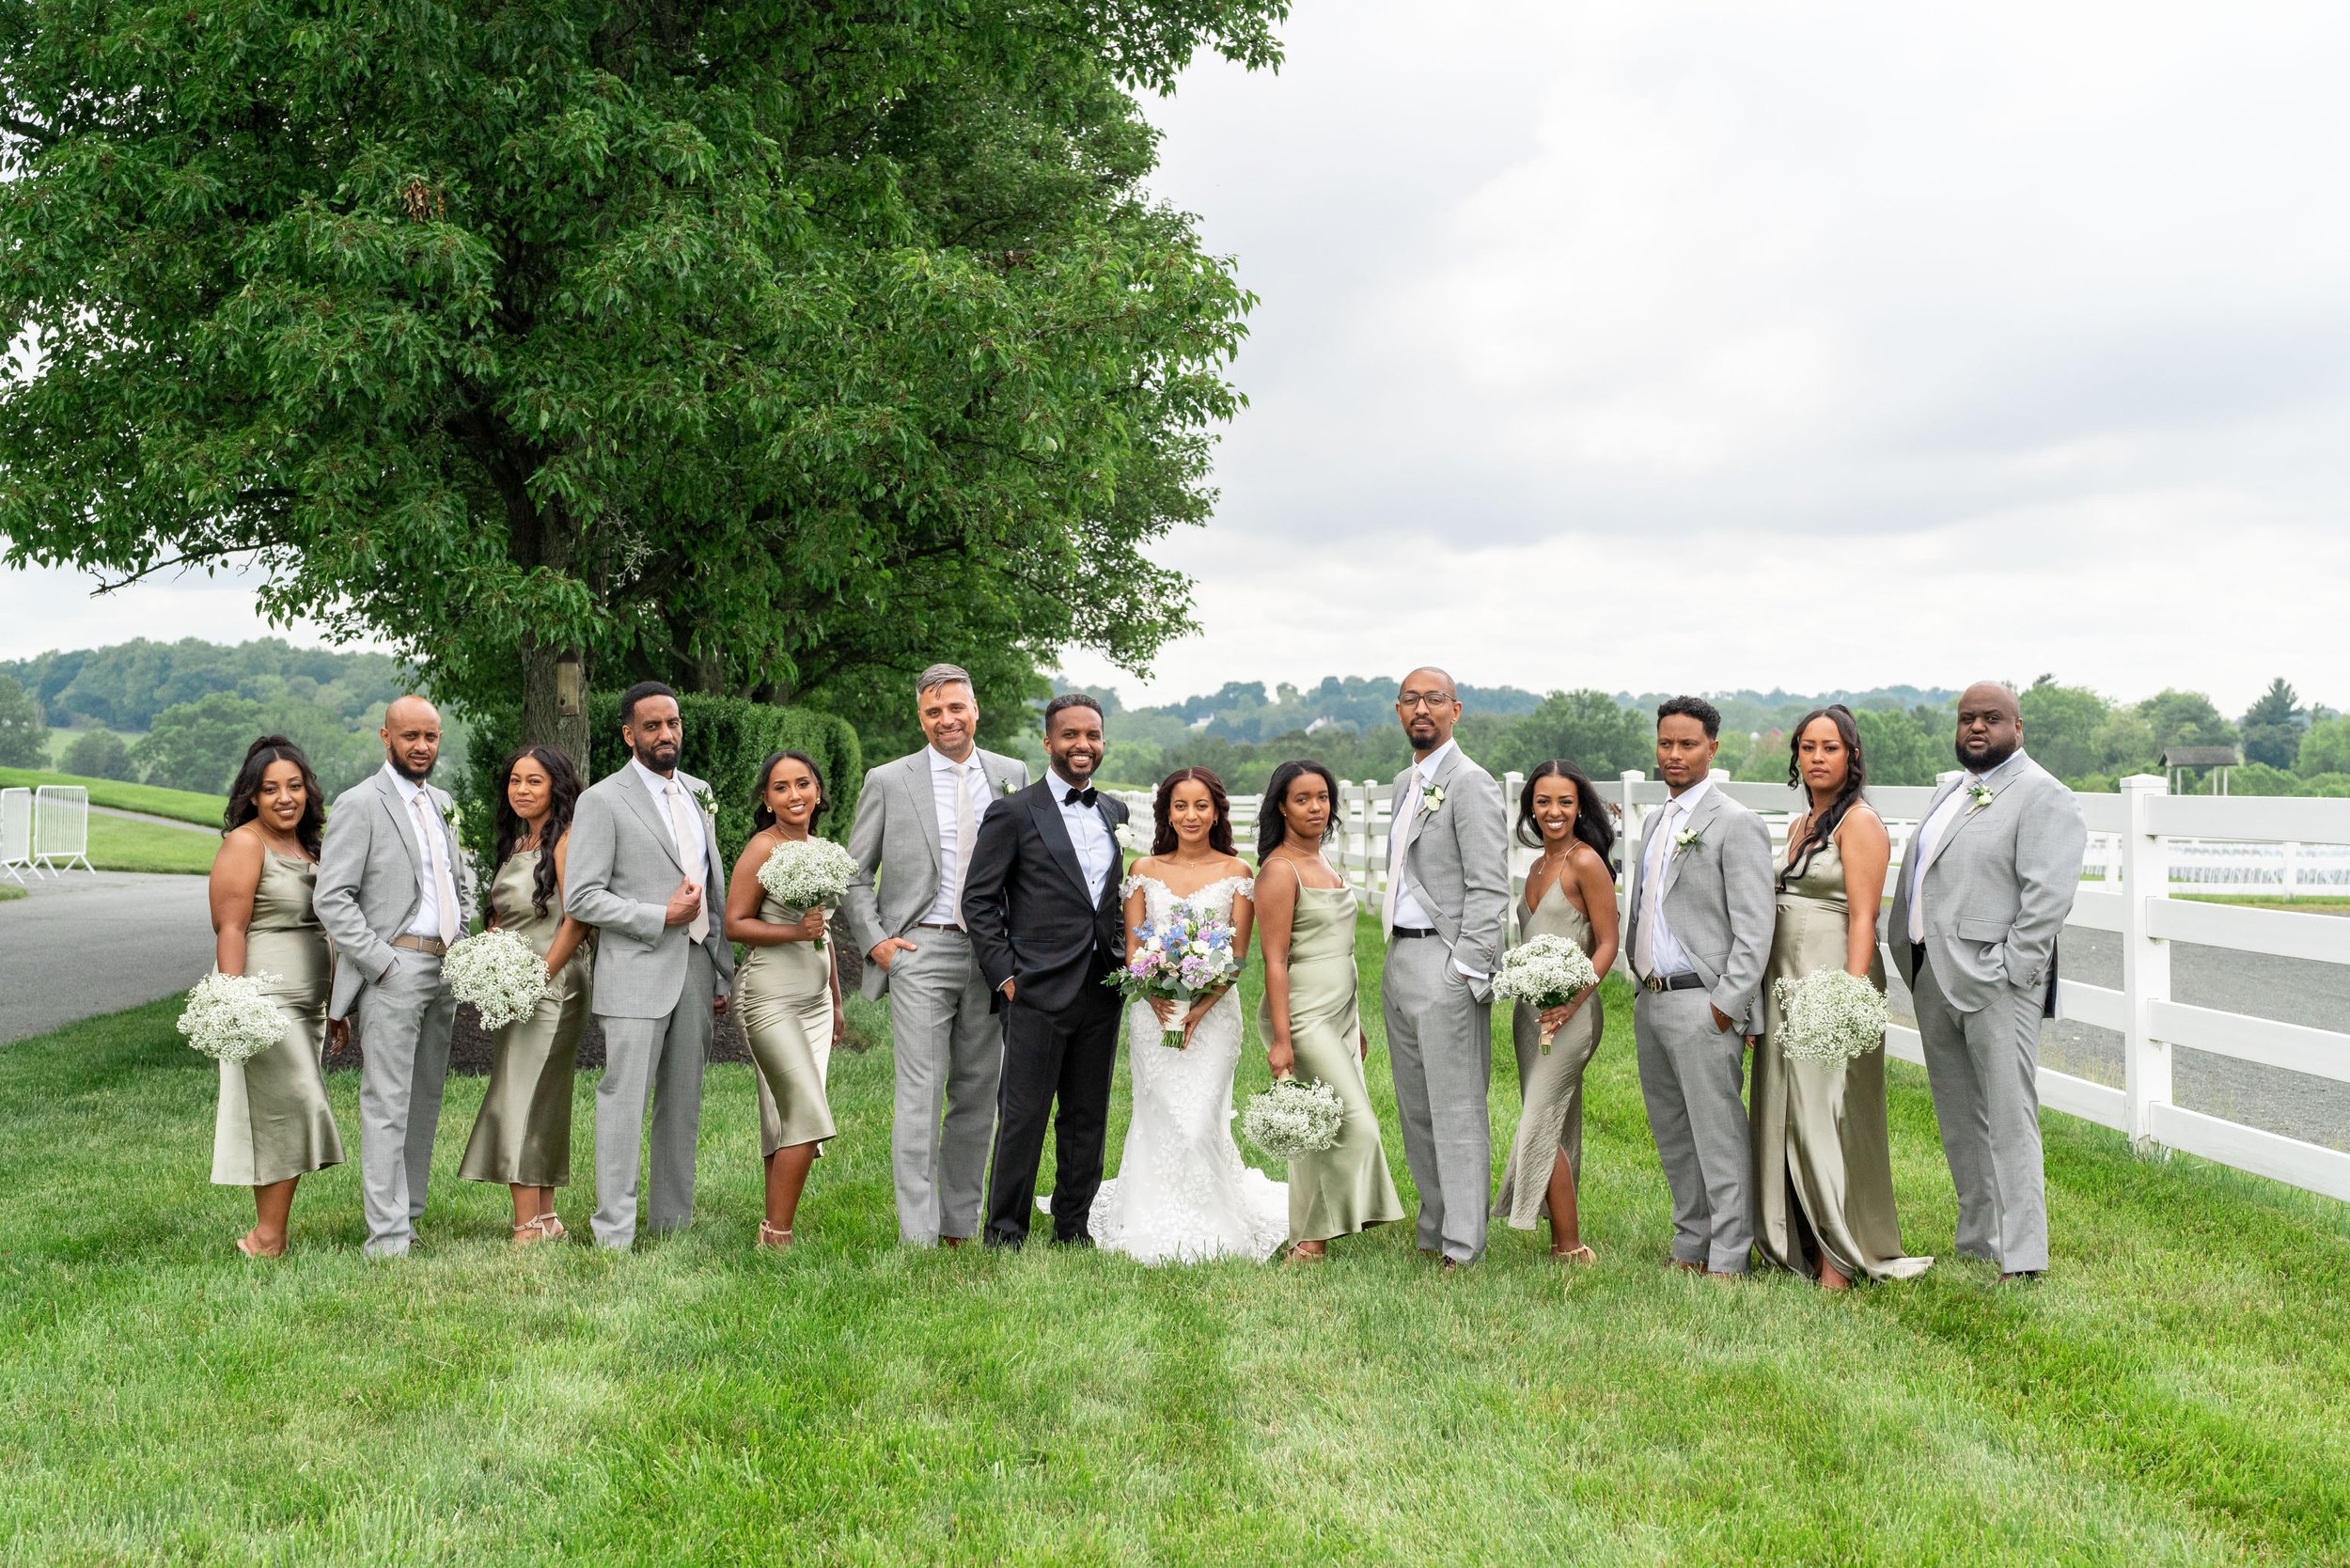 Wedding party photos at Ethiopian wedding at Vignon Manor Farm